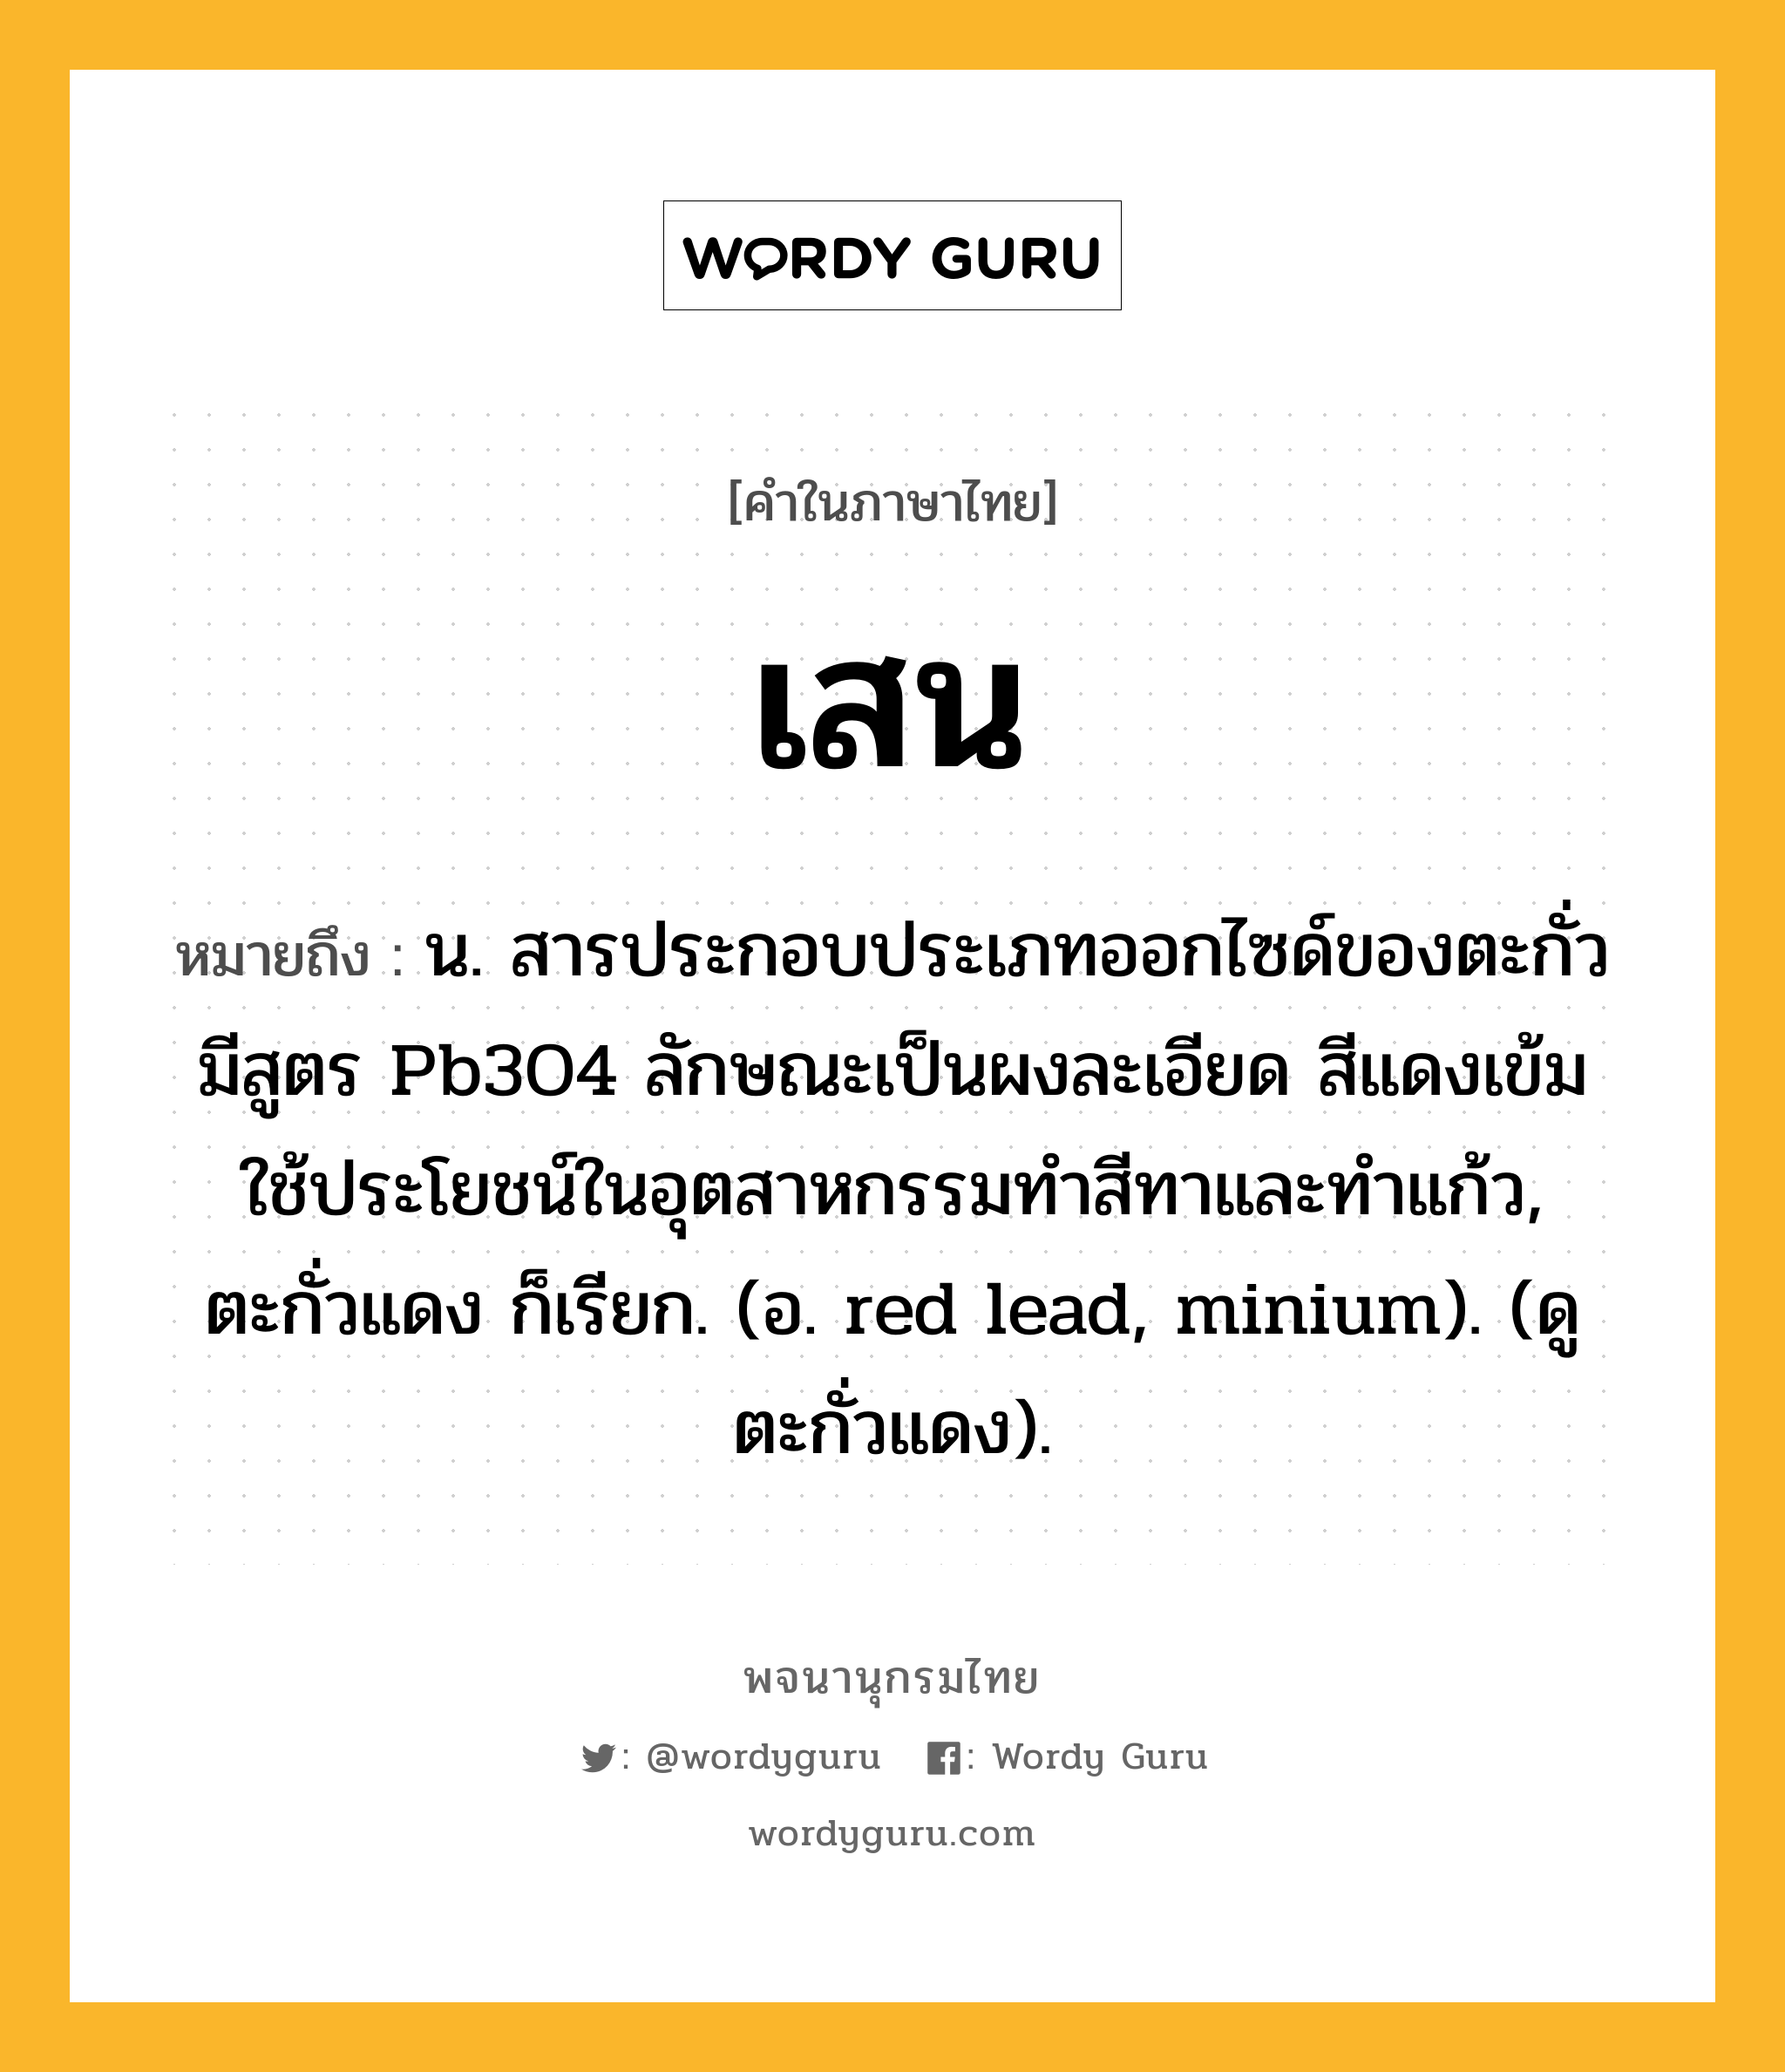 เสน ความหมาย หมายถึงอะไร?, คำในภาษาไทย เสน หมายถึง น. สารประกอบประเภทออกไซด์ของตะกั่ว มีสูตร Pb3O4 ลักษณะเป็นผงละเอียด สีแดงเข้ม ใช้ประโยชน์ในอุตสาหกรรมทําสีทาและทําแก้ว, ตะกั่วแดง ก็เรียก. (อ. red lead, minium). (ดู ตะกั่วแดง).